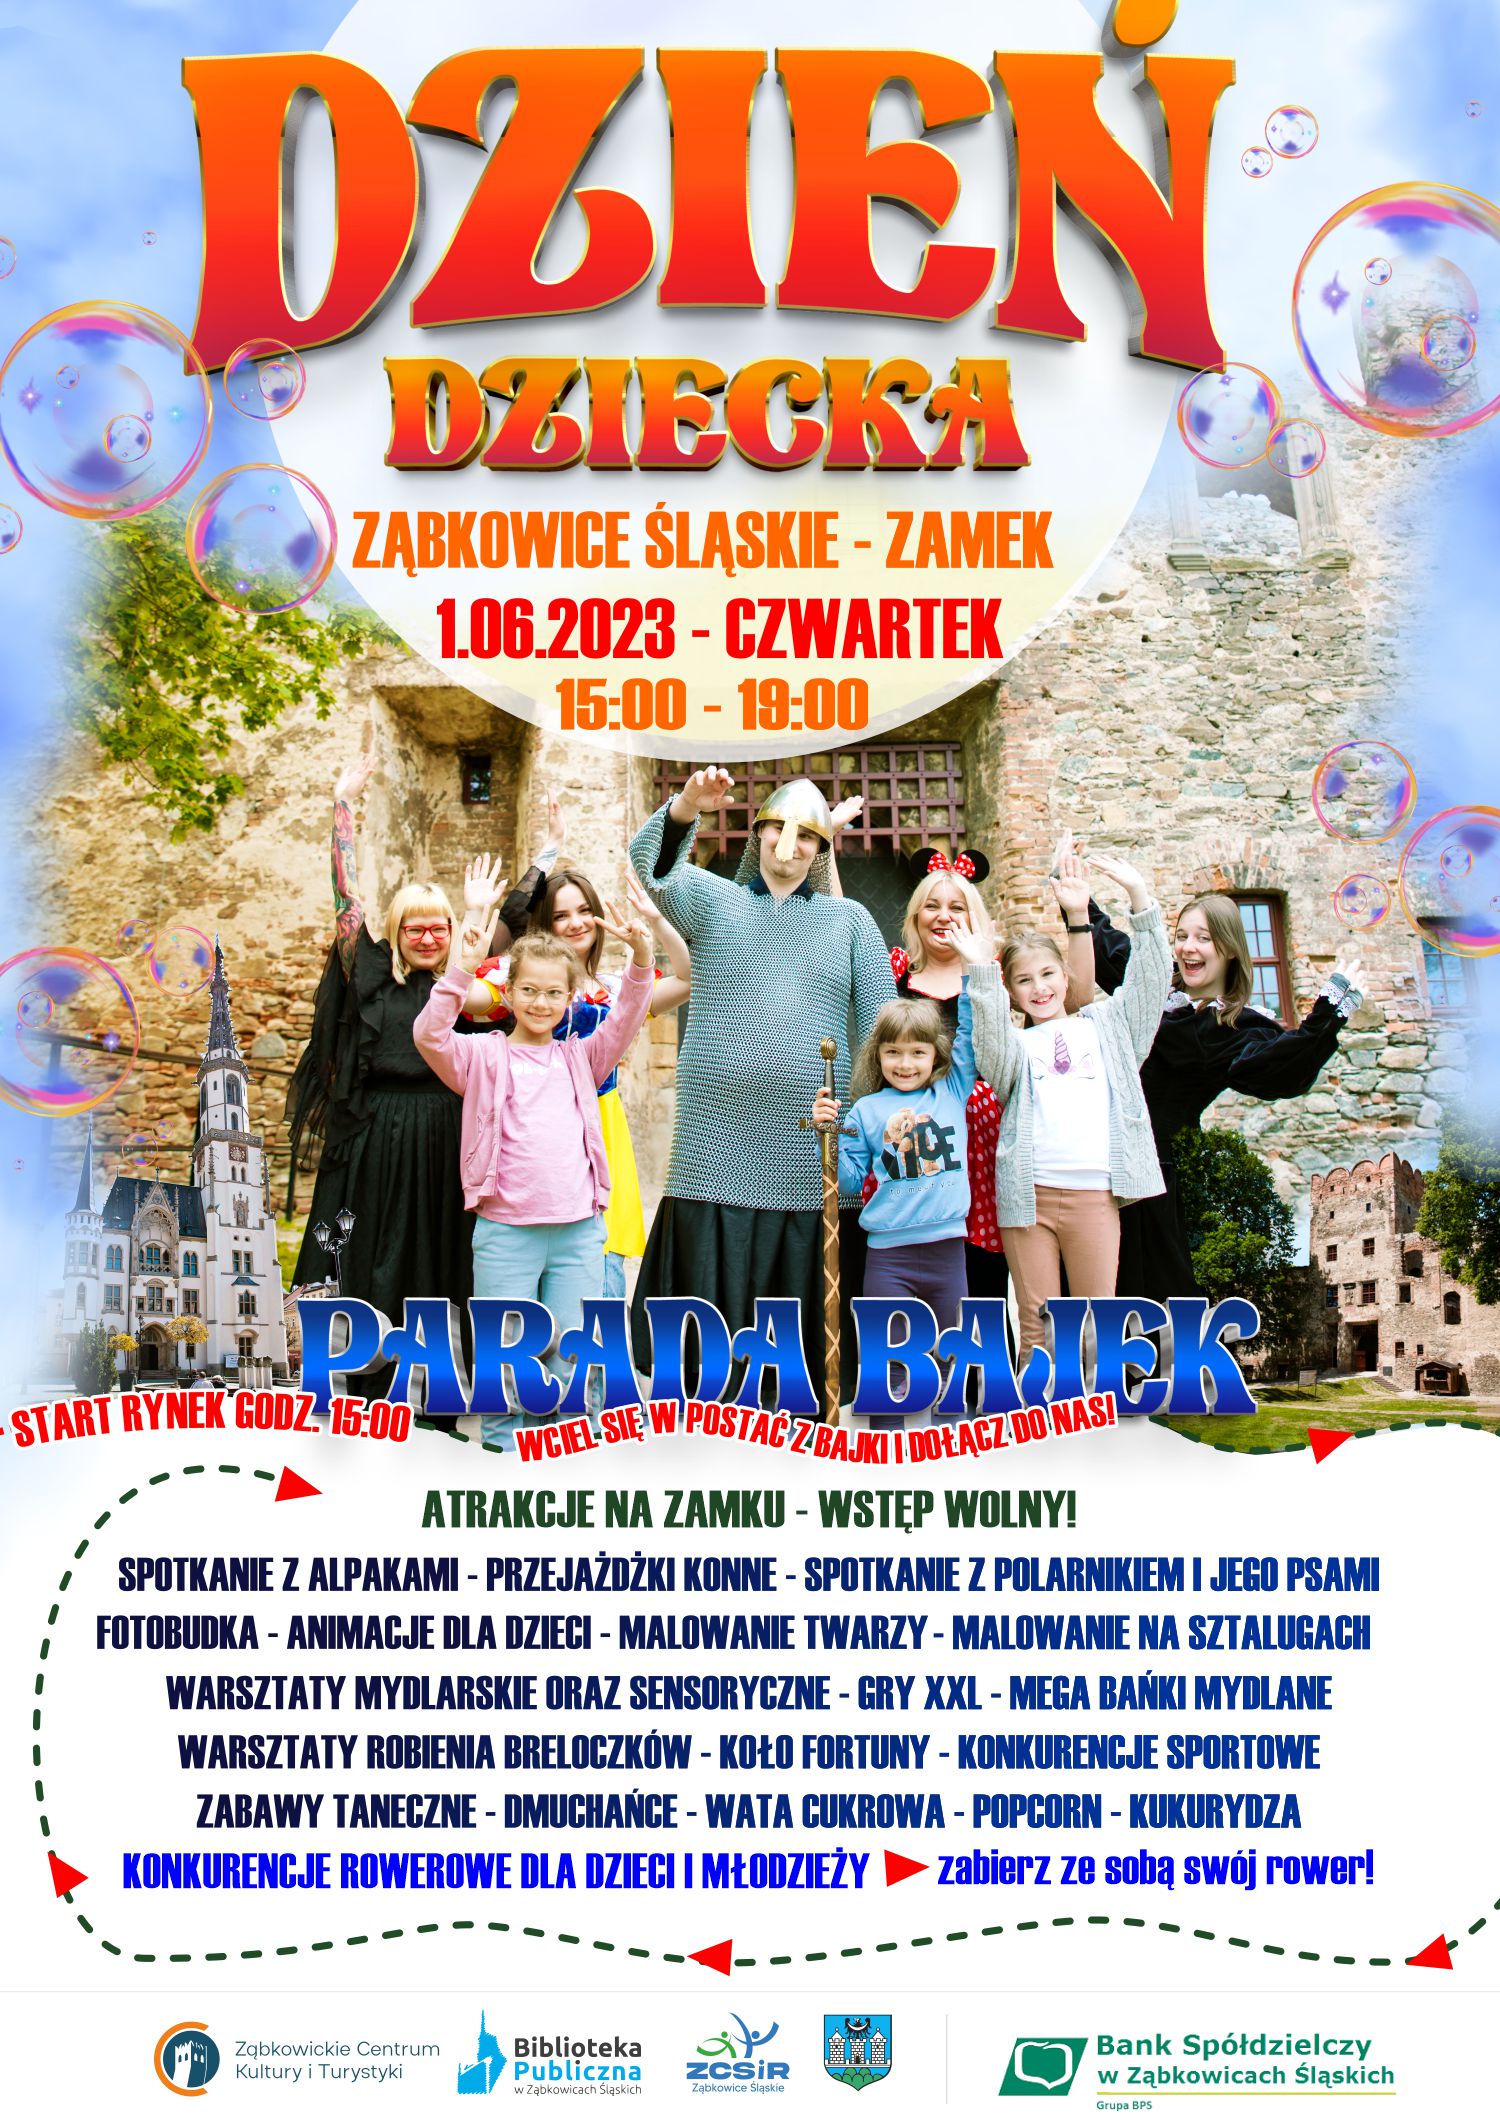 Plakat informujący o atrakcjach na Zamku w Ząbkowicach Śląskich z okazji Dnia Dziecka 1 czerwca 2023 od godziny 15:00.